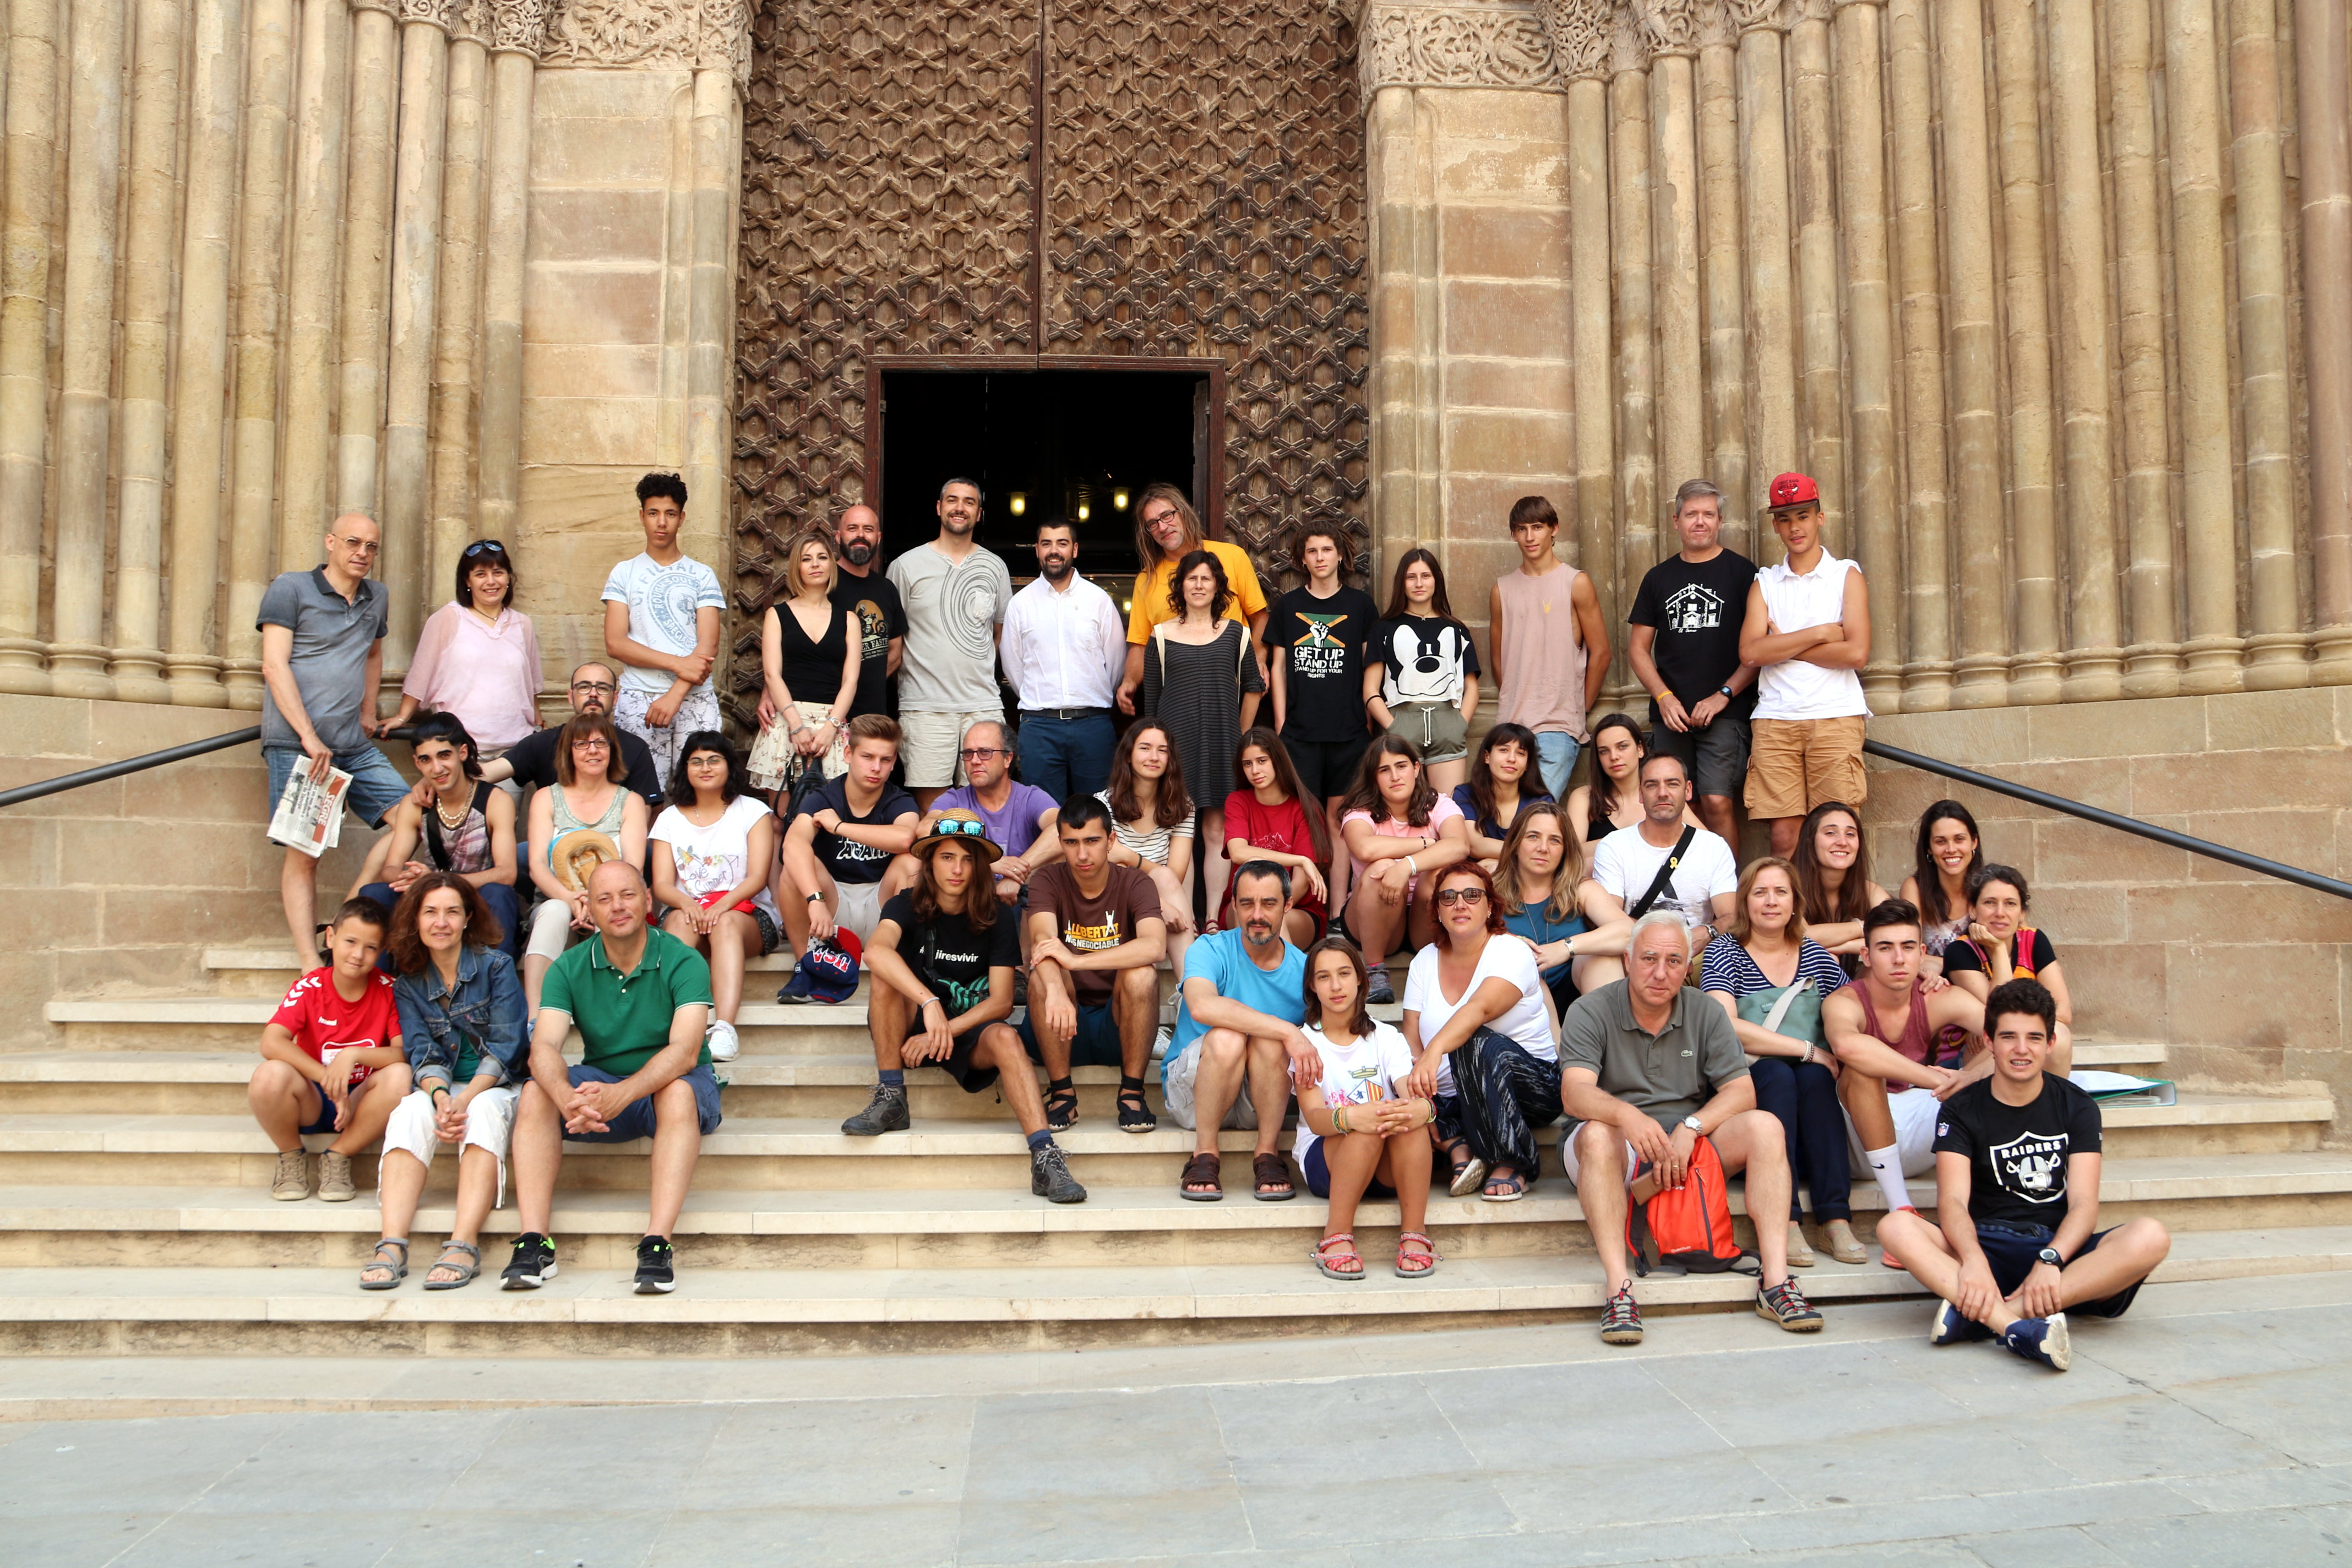 Quinze adolescents d’arreu de Catalunya participen al segon camp de treball d’estiu per a joves a Agramunt